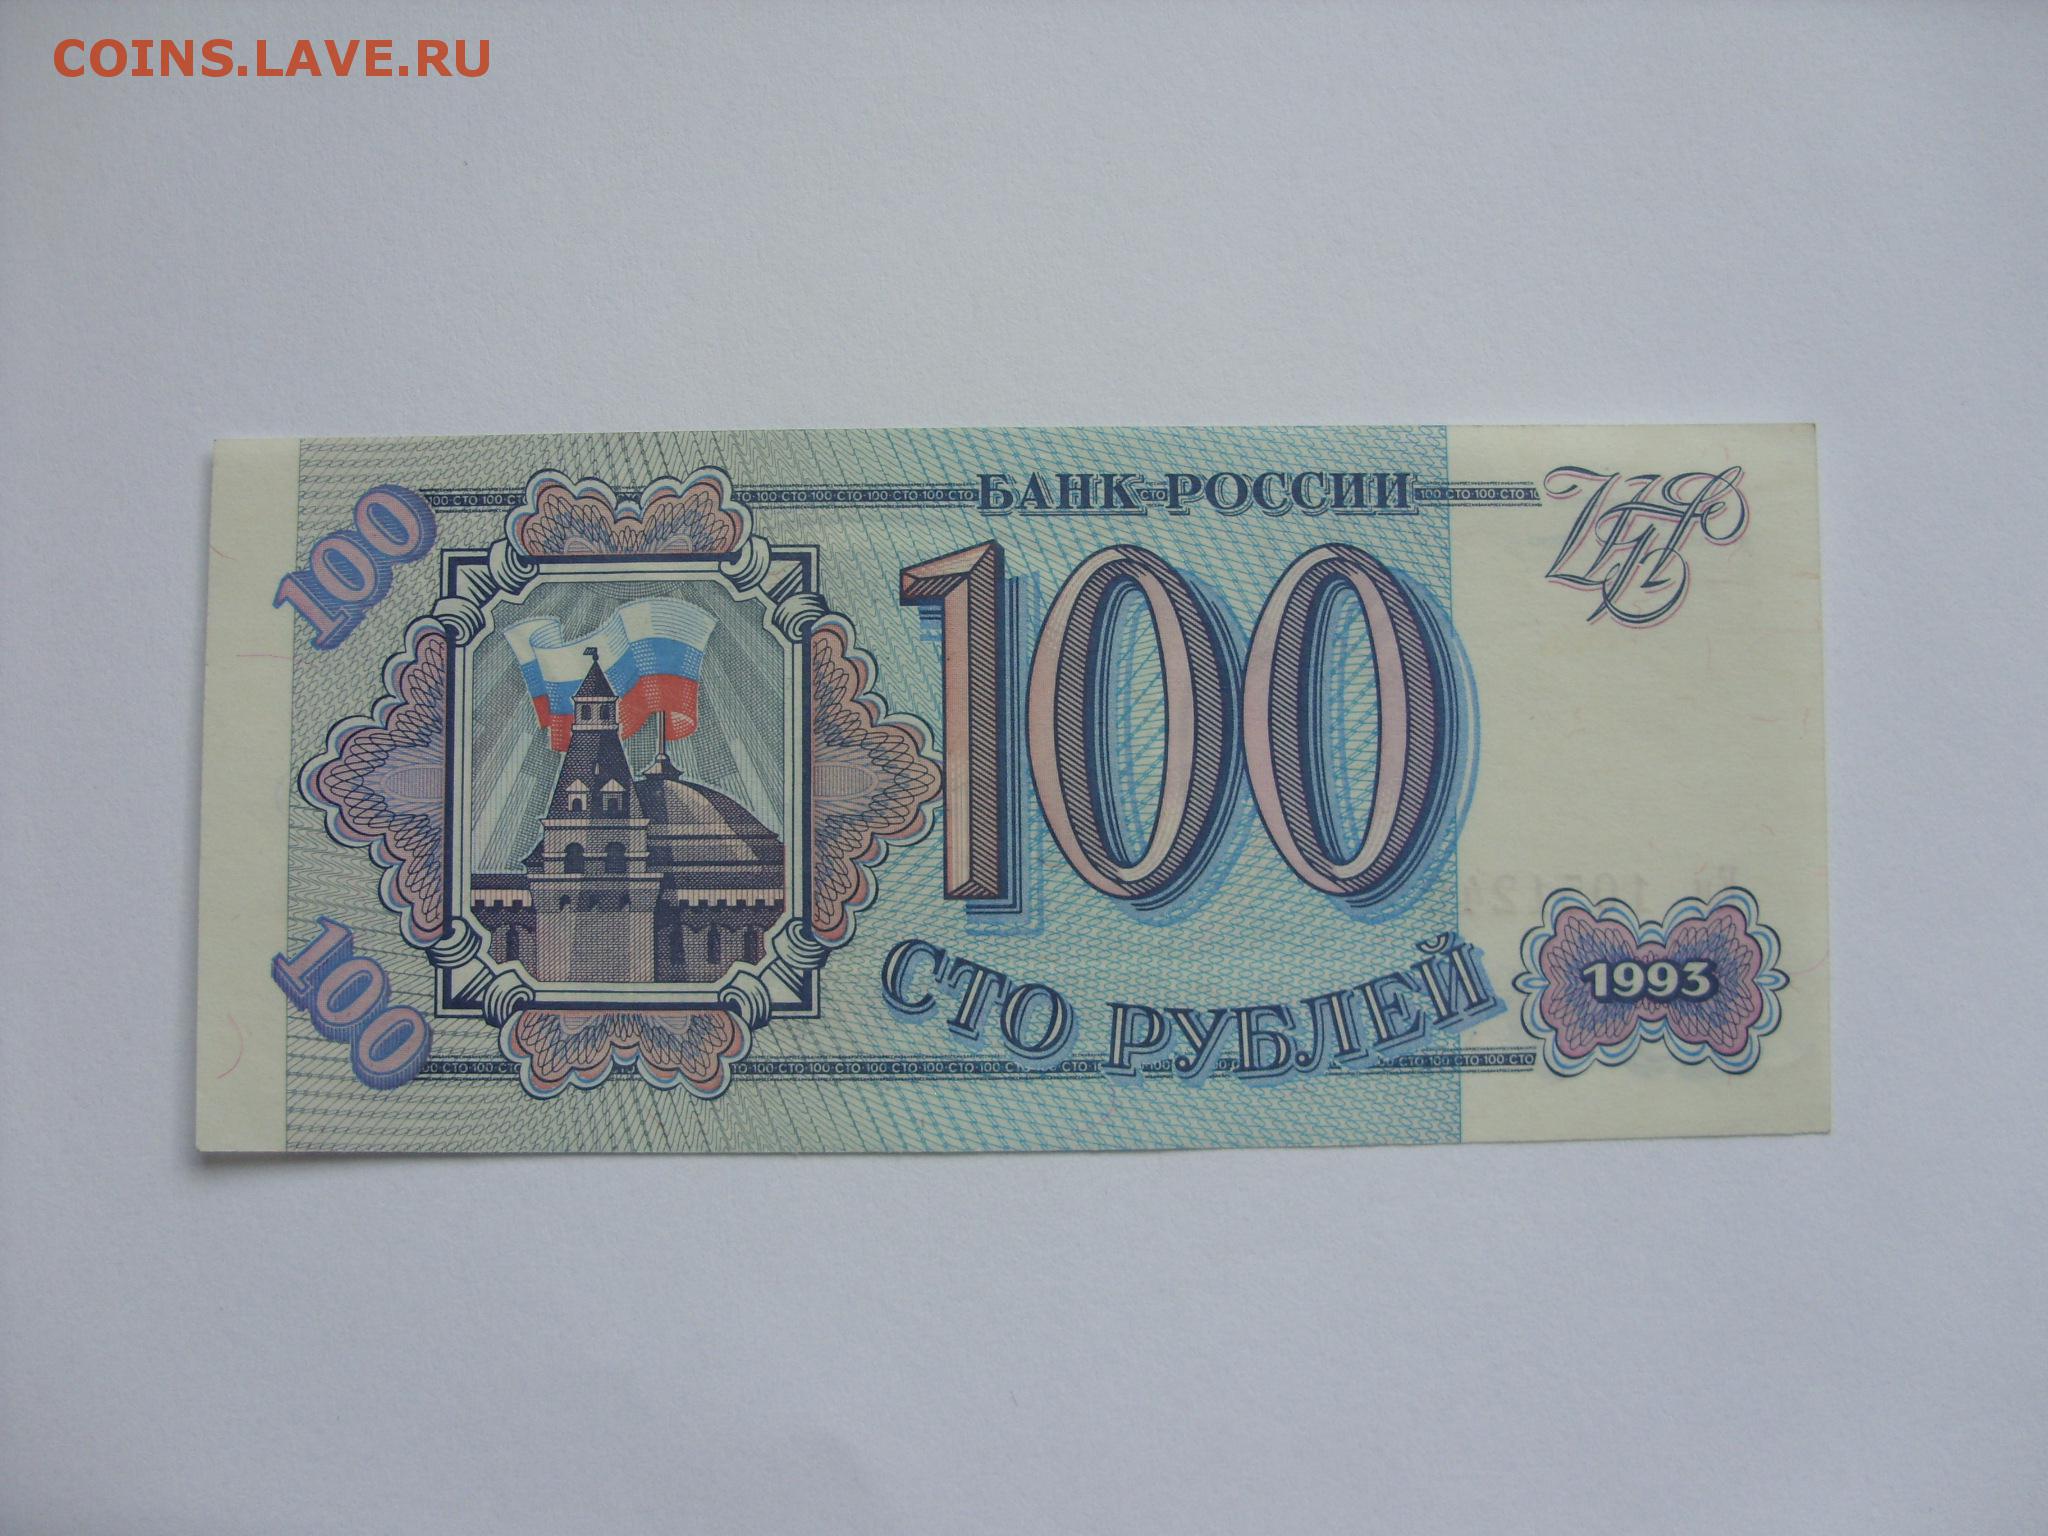 Сто шестьдесят рублей. 100р 1993г. 100 Рублей 1993 купюра. 100 Рублей 1993 года. Банкнота 100 рублей 1993 года.